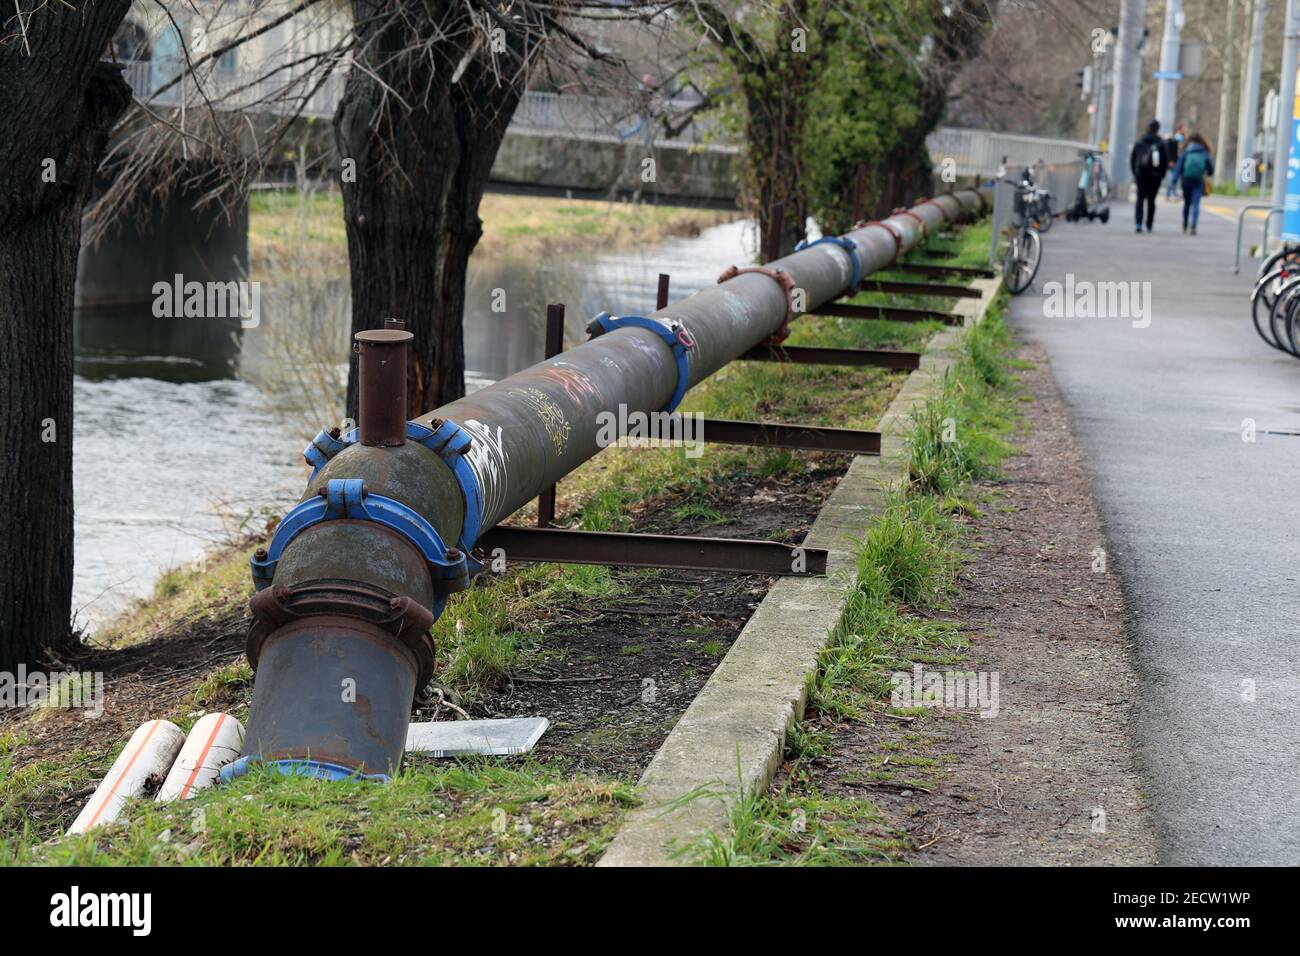 Vecchia pipeline rustica vicino a una passerella nel centro di Zürich, in Svizzera. Fotografato durante una giornata di primavera nuvolosa. Poche persone. Immagine a colori. Foto Stock